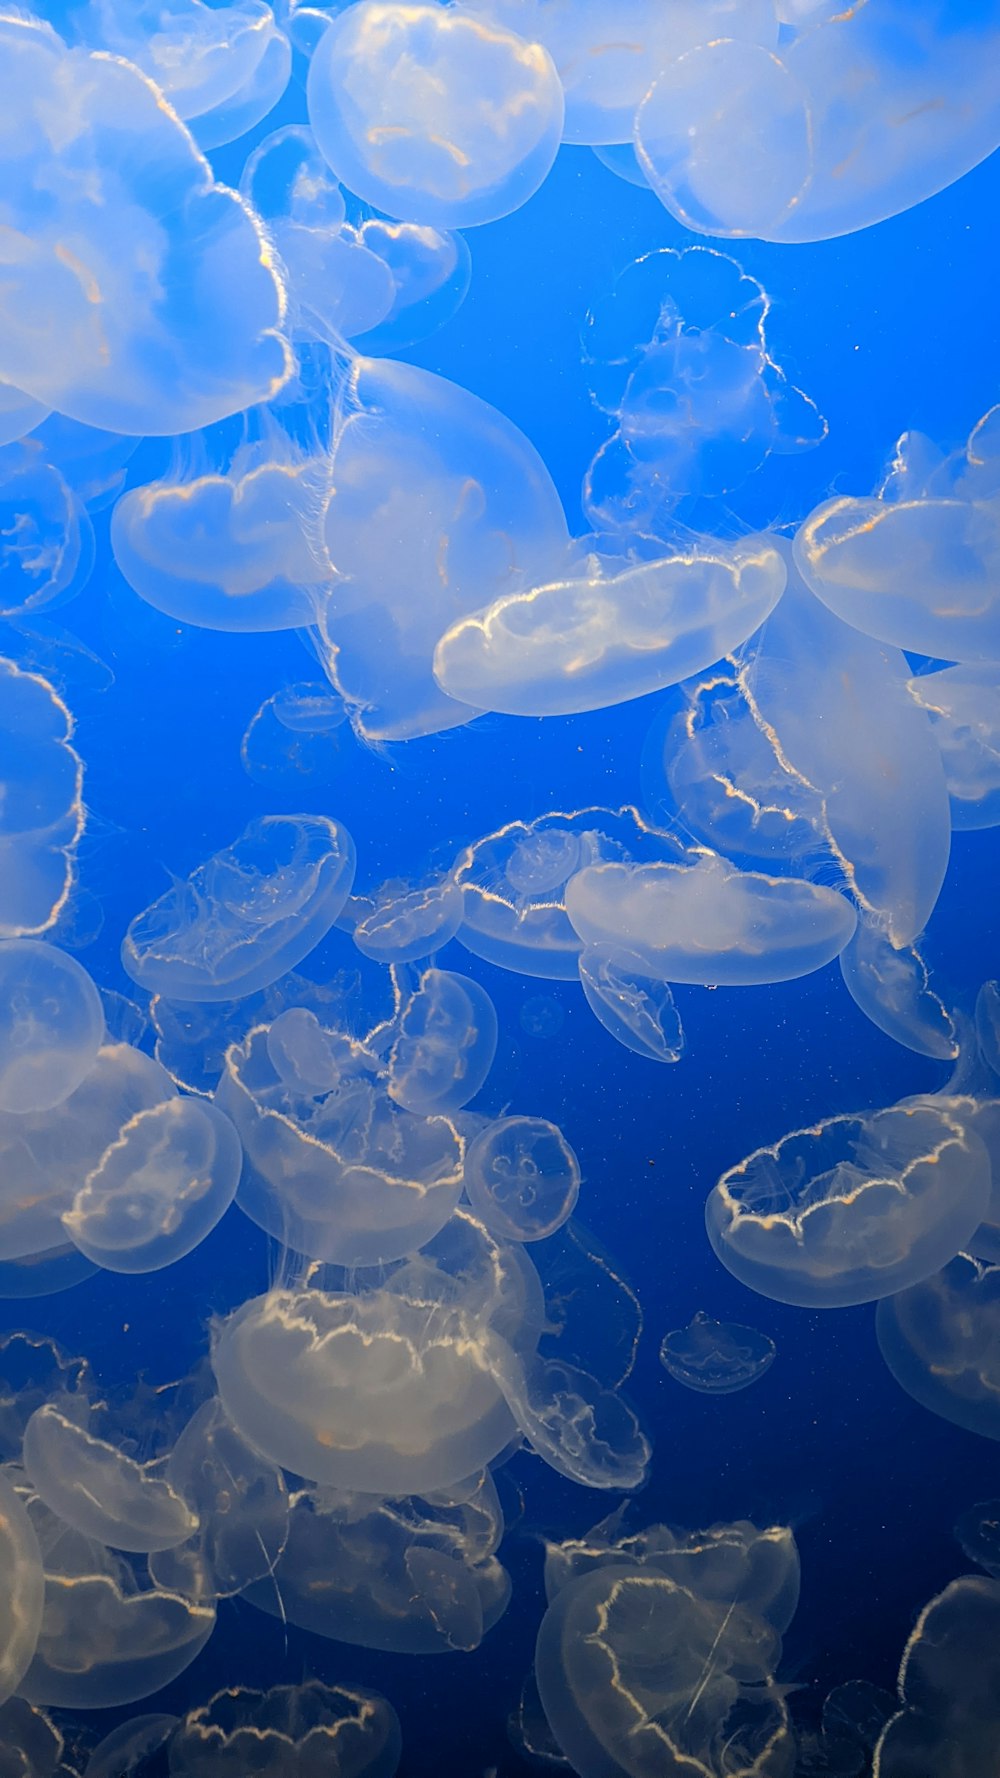 Un grupo de medusas nadando en el océano